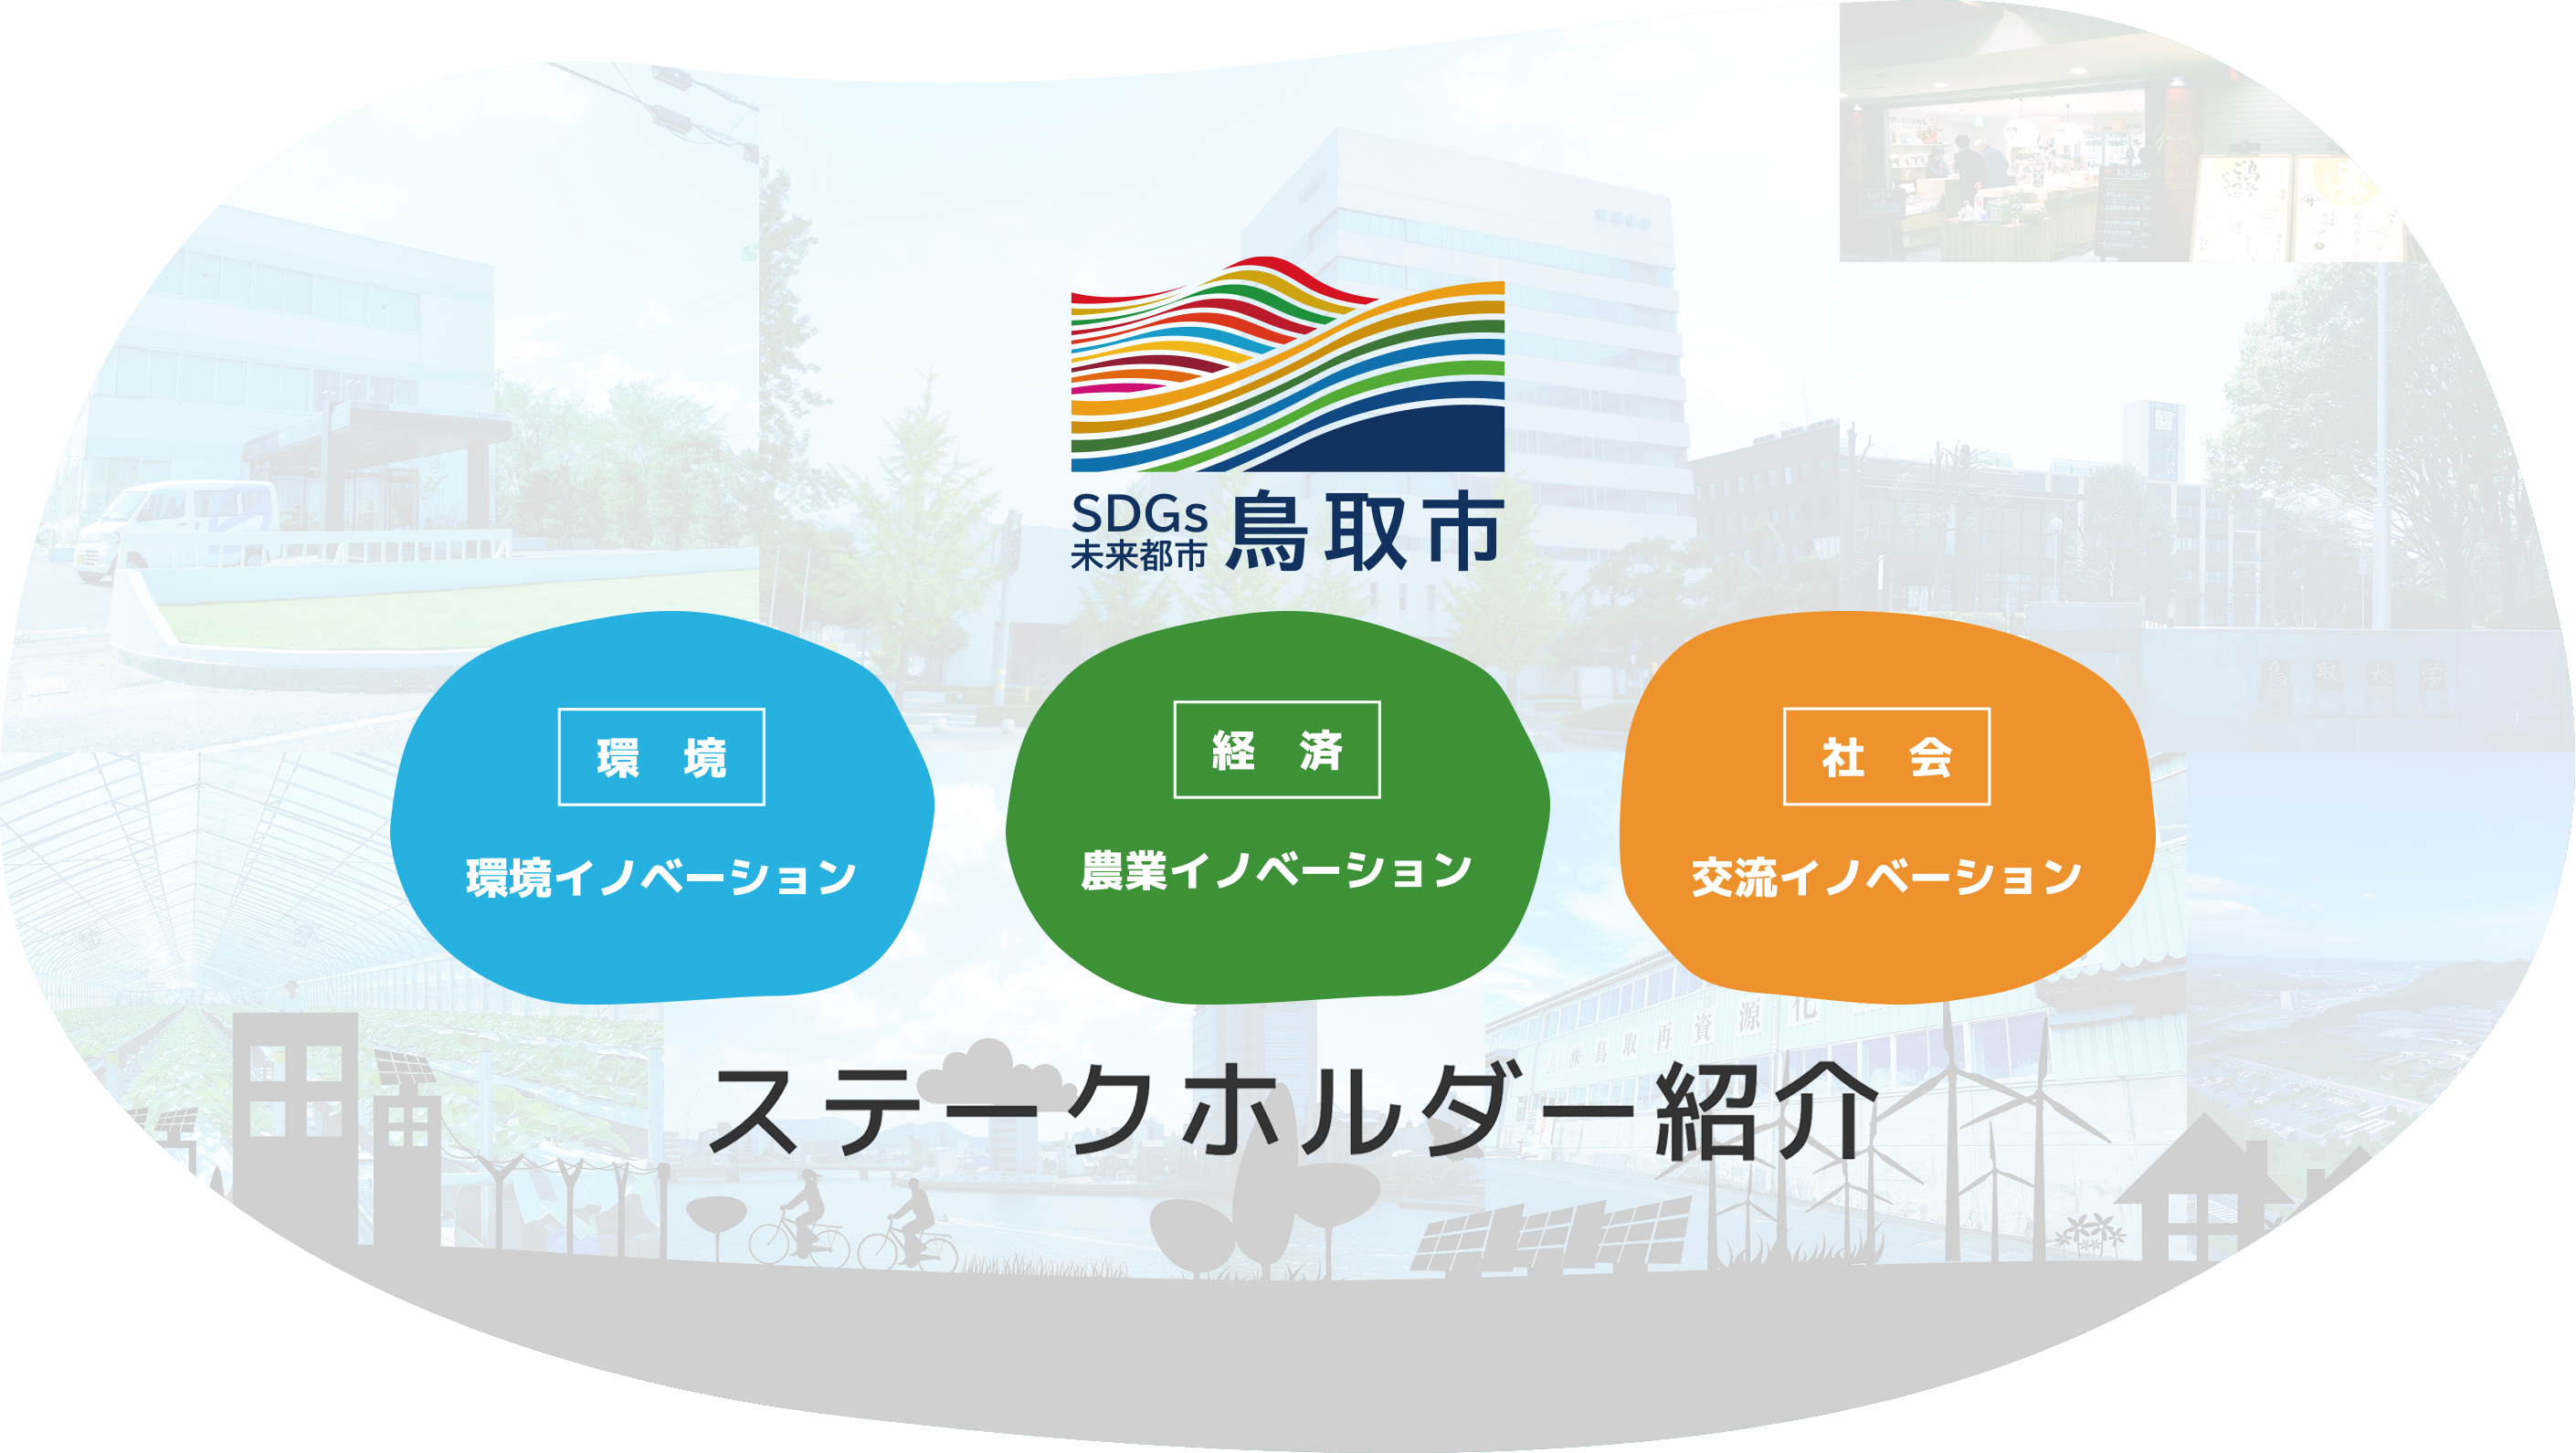 鳥取市SDGs未来都市計画 ステークホルダー紹介